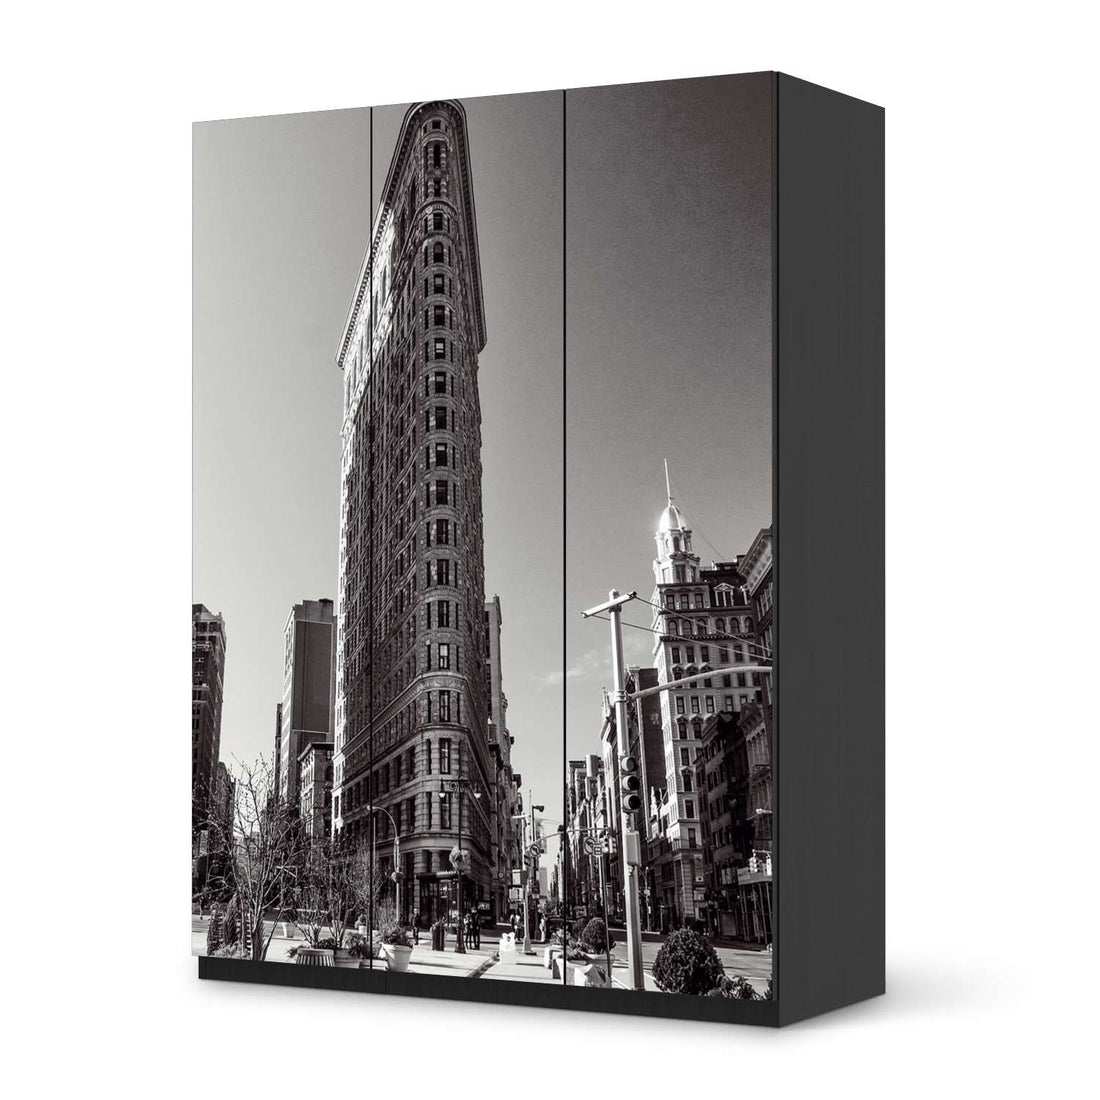 Folie für Möbel Manhattan - IKEA Pax Schrank 201 cm Höhe - 3 Türen - schwarz